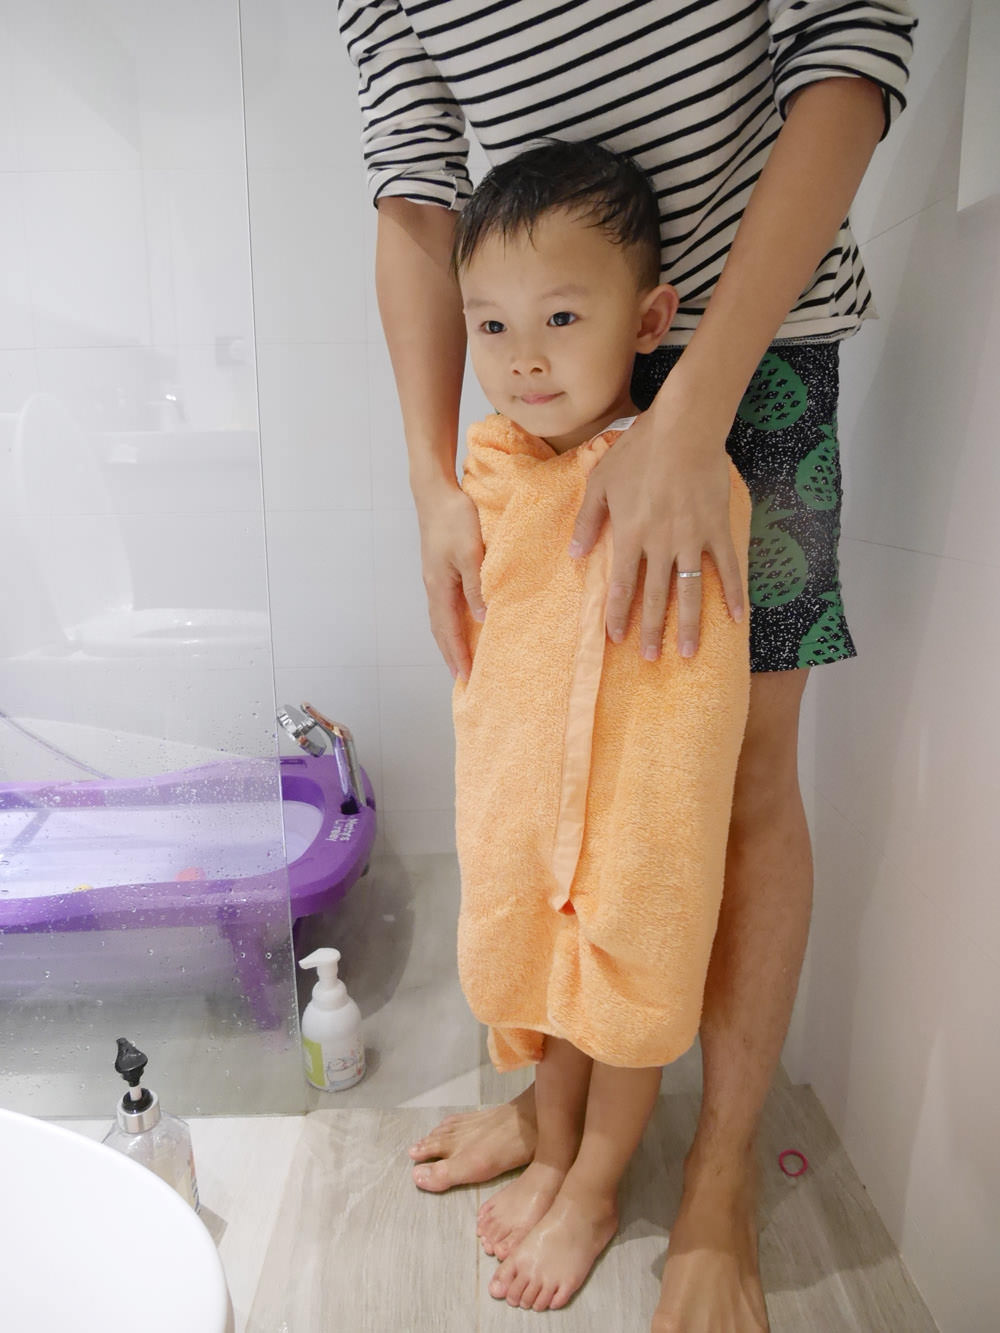 [育兒好物] 一罐從頭洗到腳嬰兒沐浴用品推薦!給寶寶最溫柔的呵護-BOUYIEE 沐浴精靈髮膚舒緩泡泡